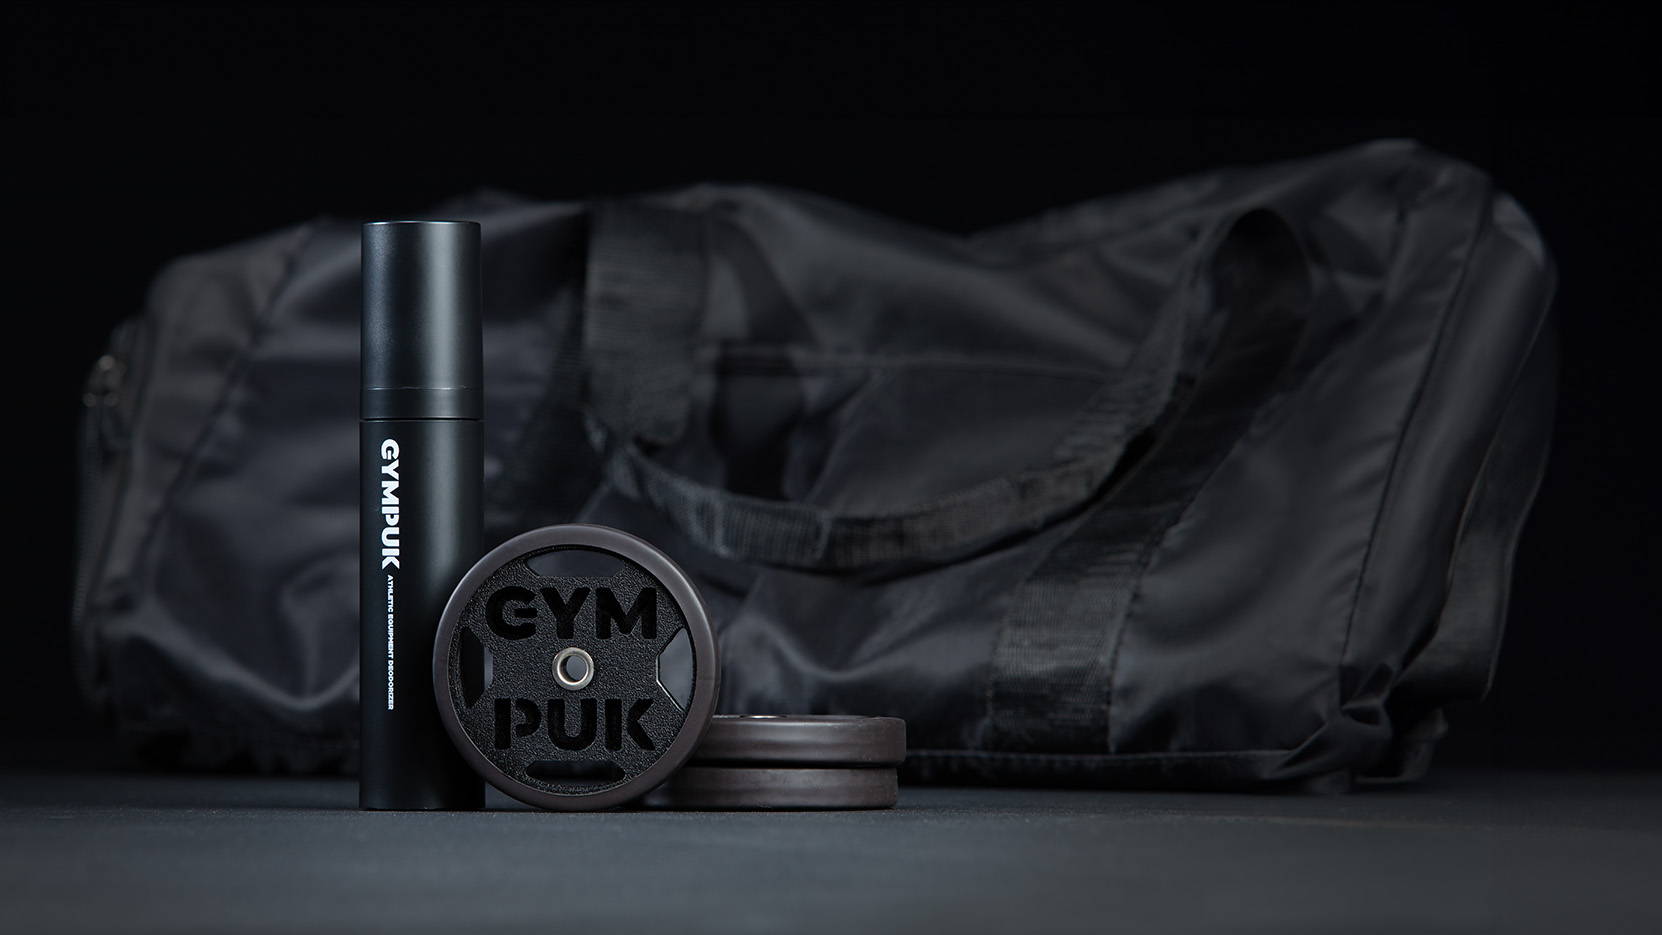 Gym bag with Gympuk Gym Bag Deodorizing Kit in front